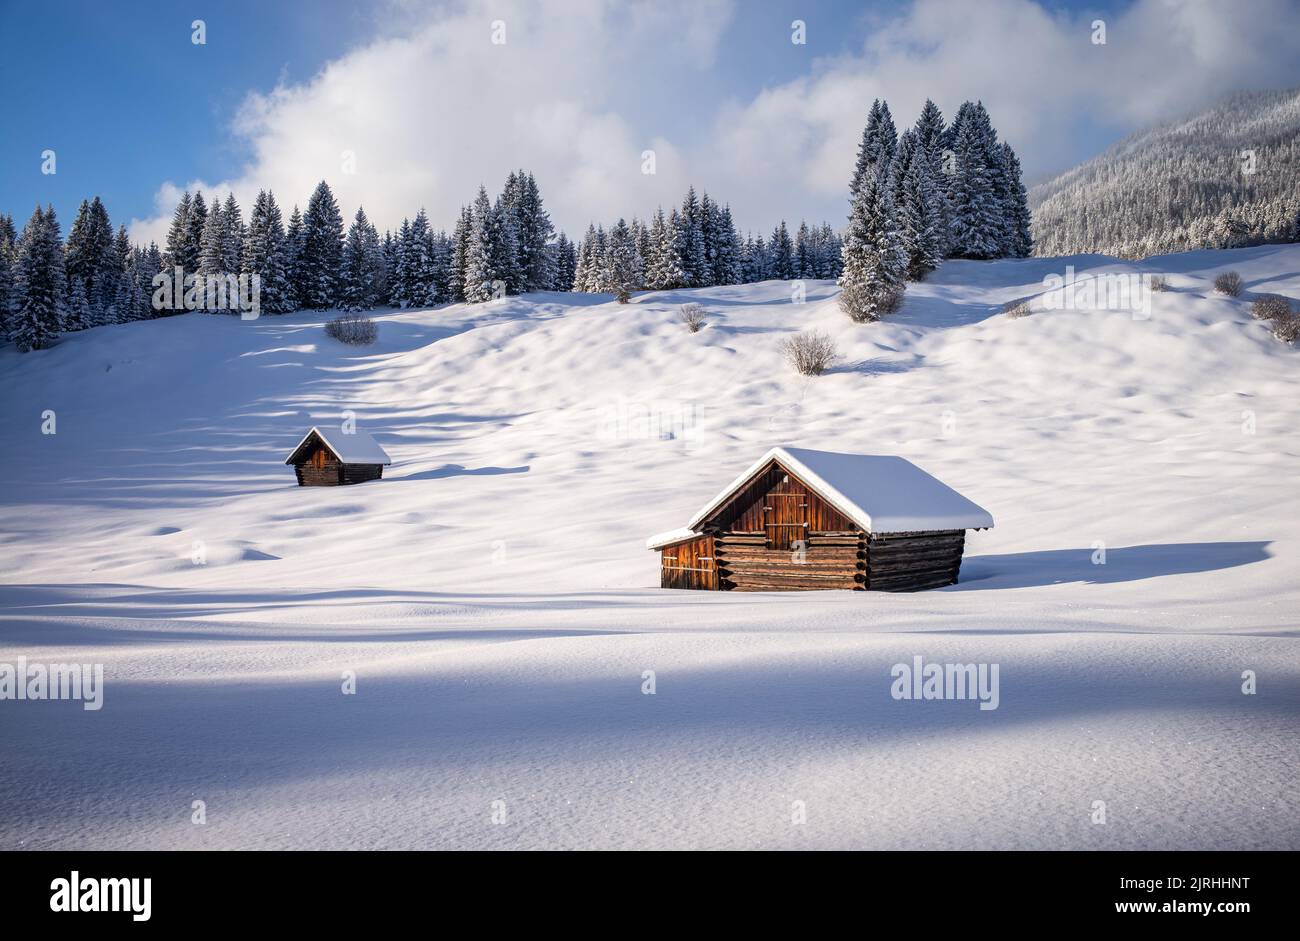 Verschneite Holzhütten auf einer Buckelwiese, Bayern, Deutschland Stock Photo